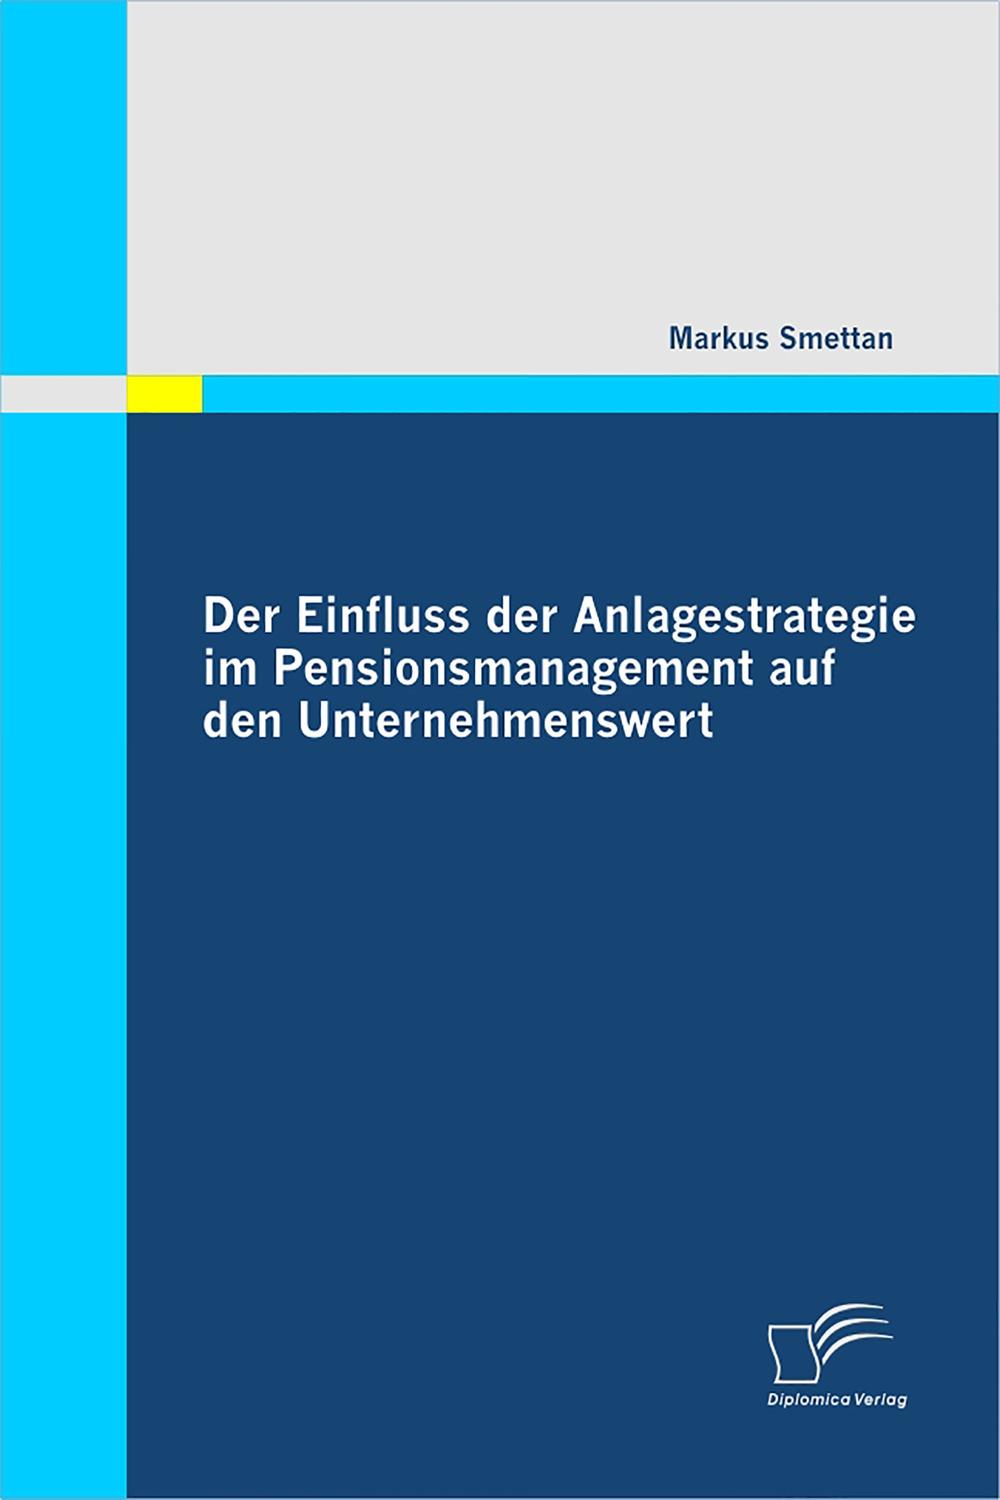 Der Einfluss der Anlagestrategie im Pensionsmanagement auf den Unternehmenswert - Markus Smettan